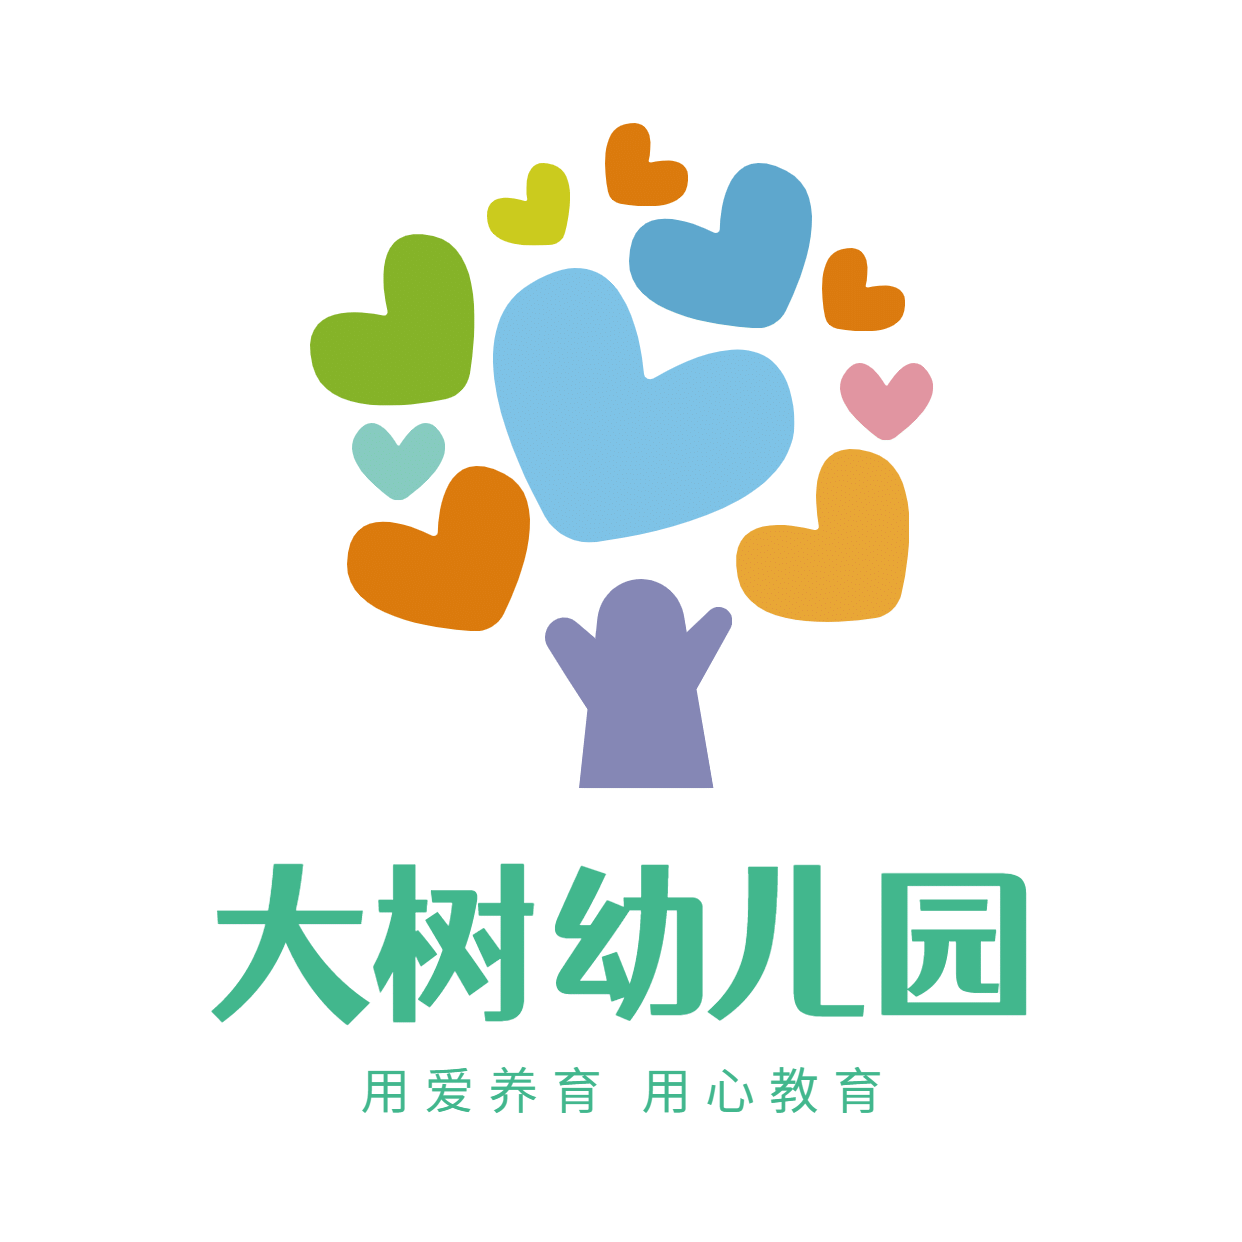 教育培训机构幼儿园店标logo